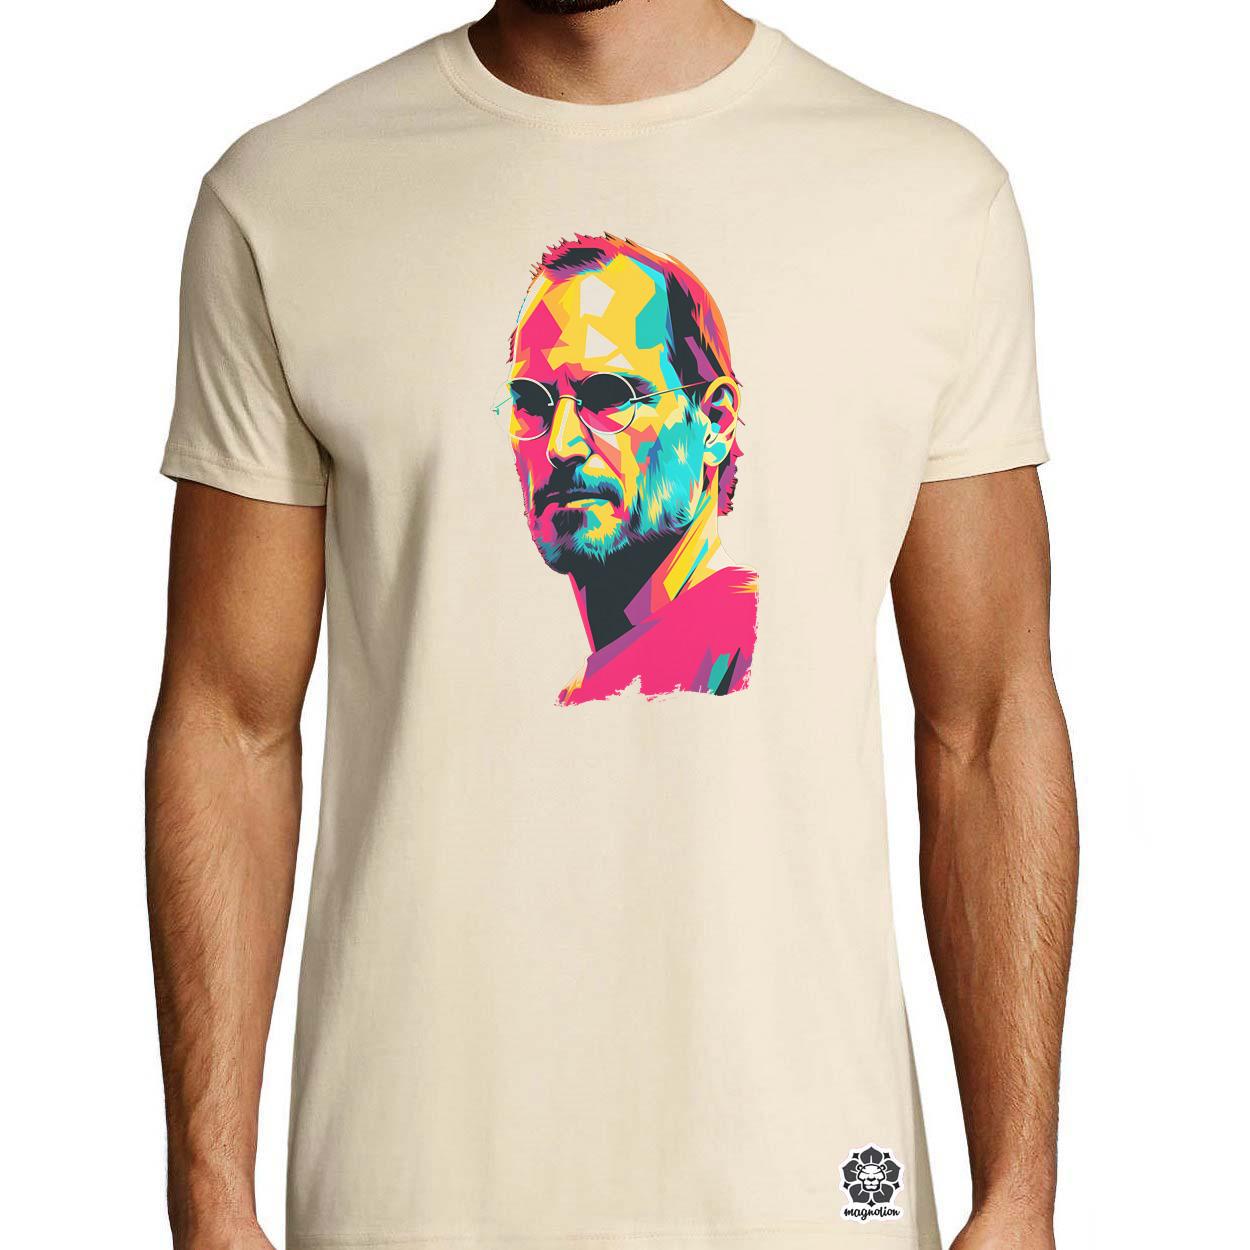 Pop art Steve Jobs v6